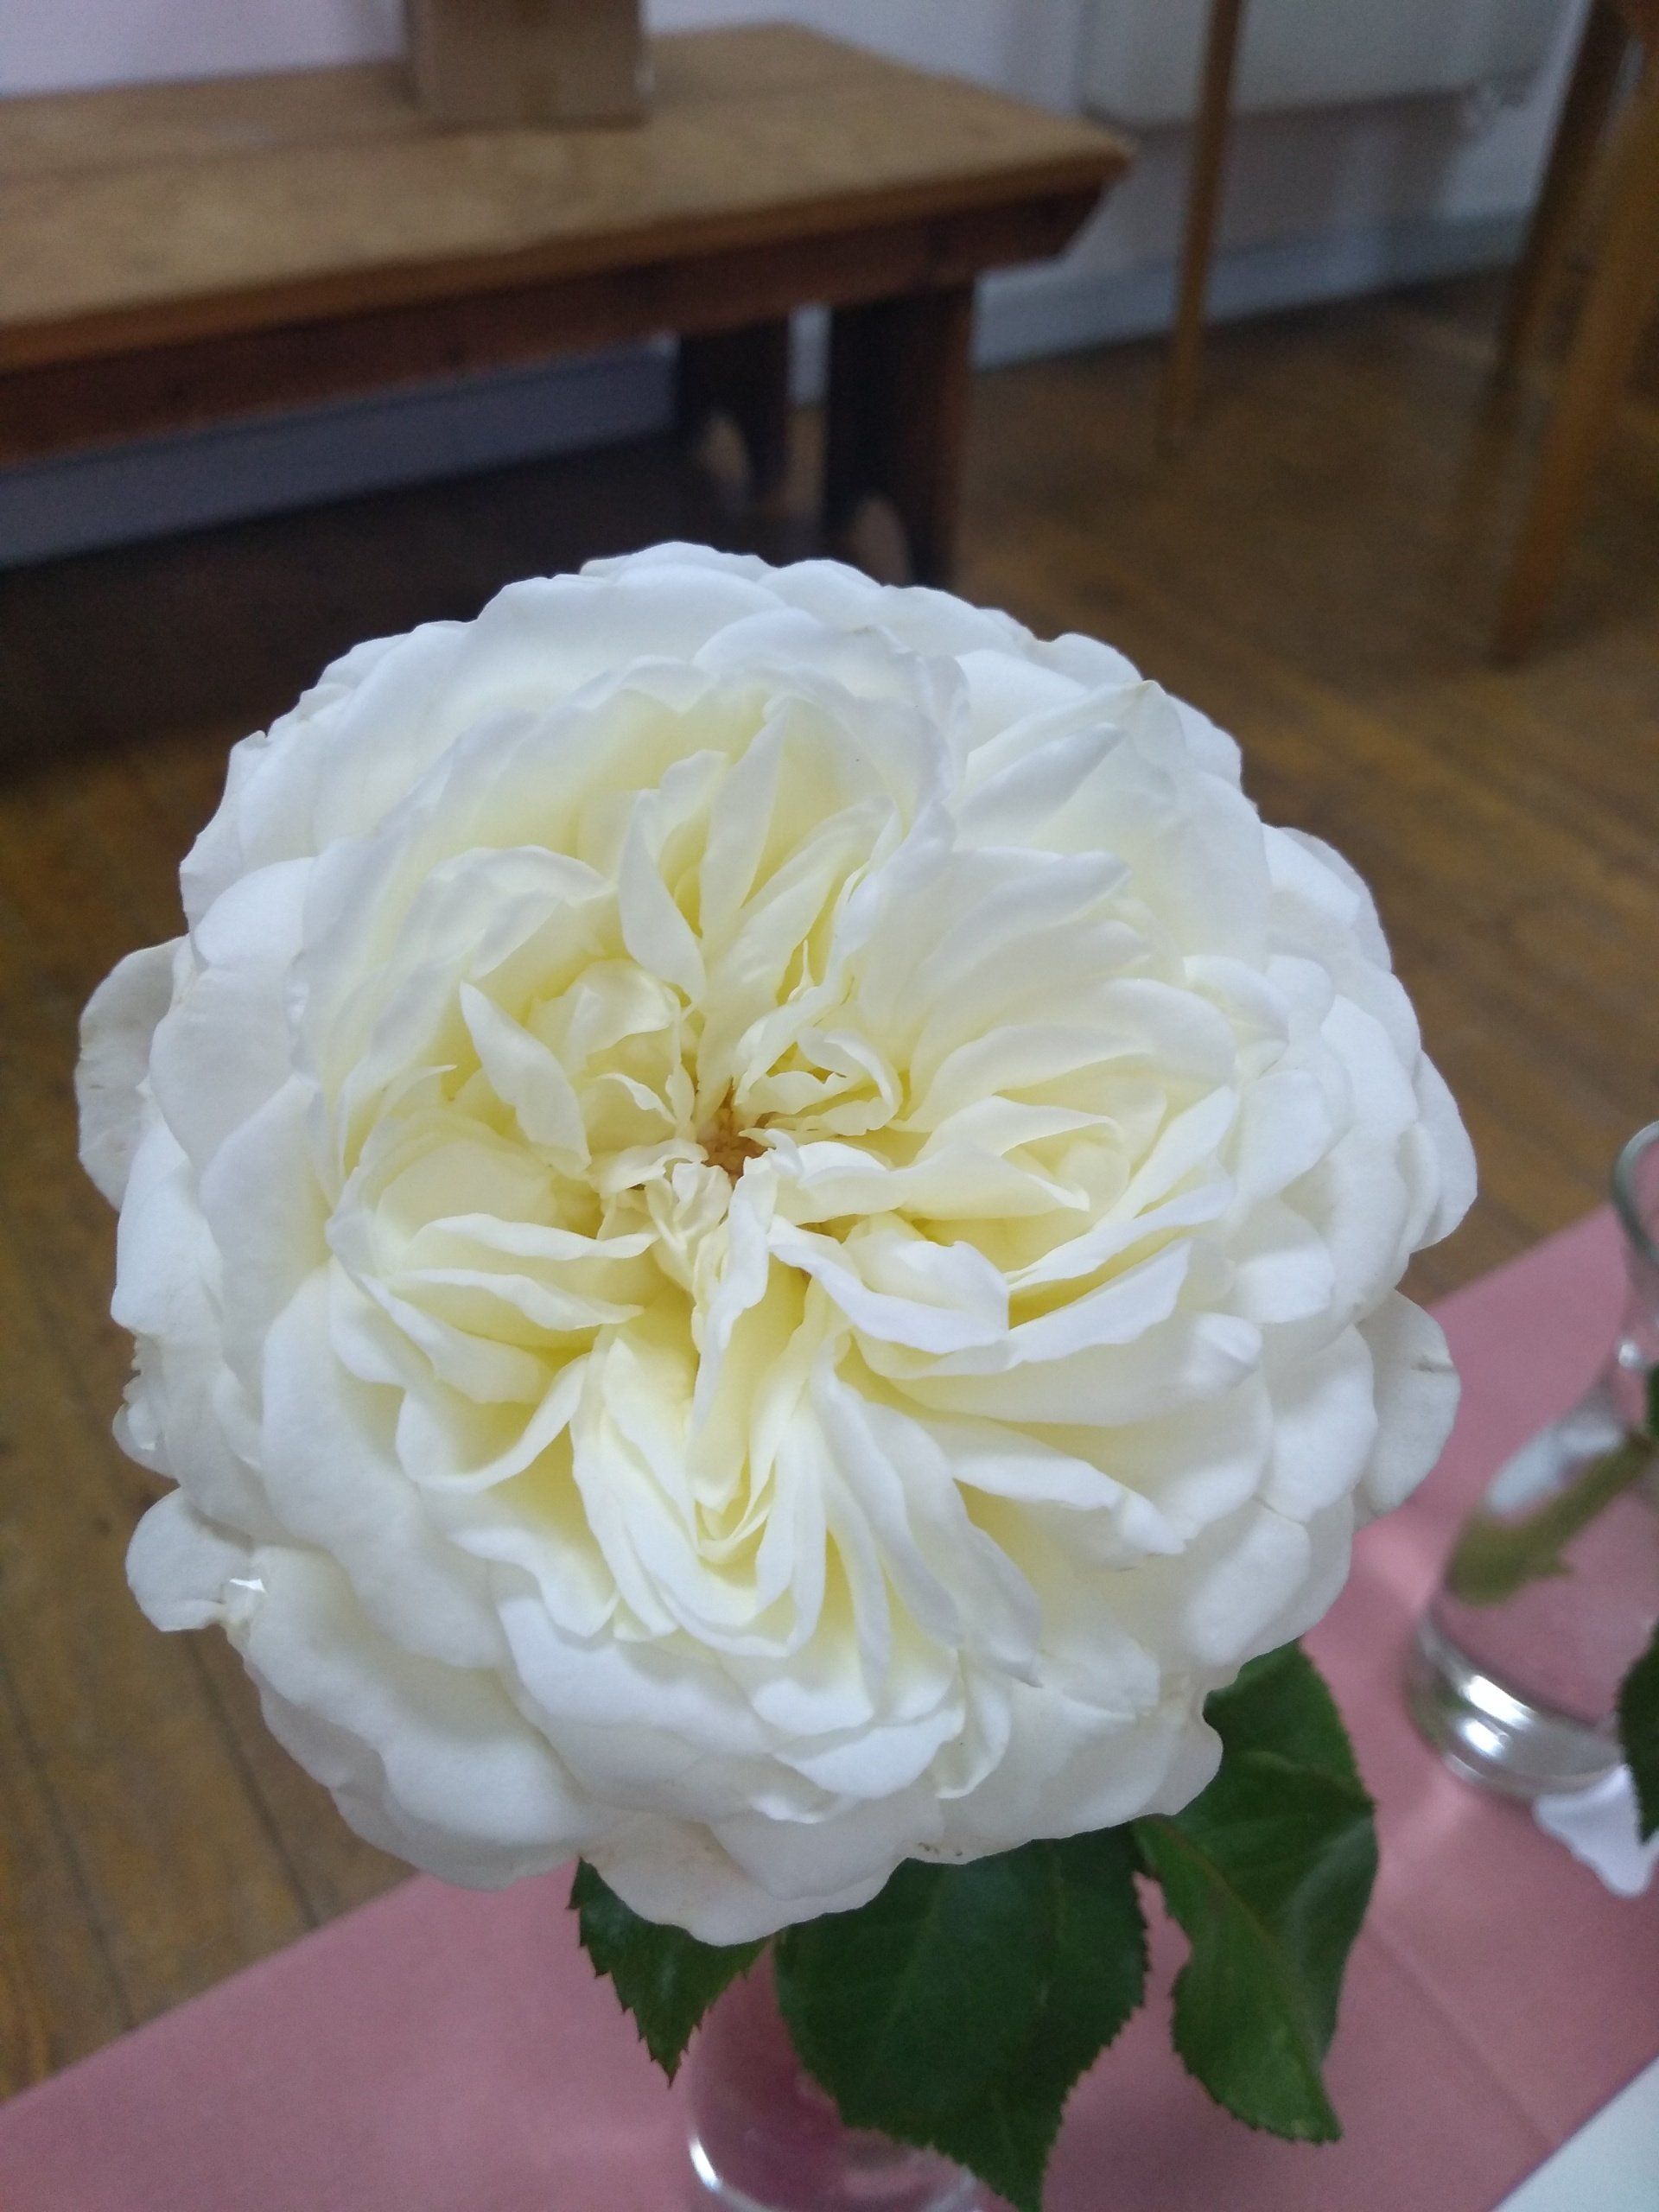 Rose 6 old english white